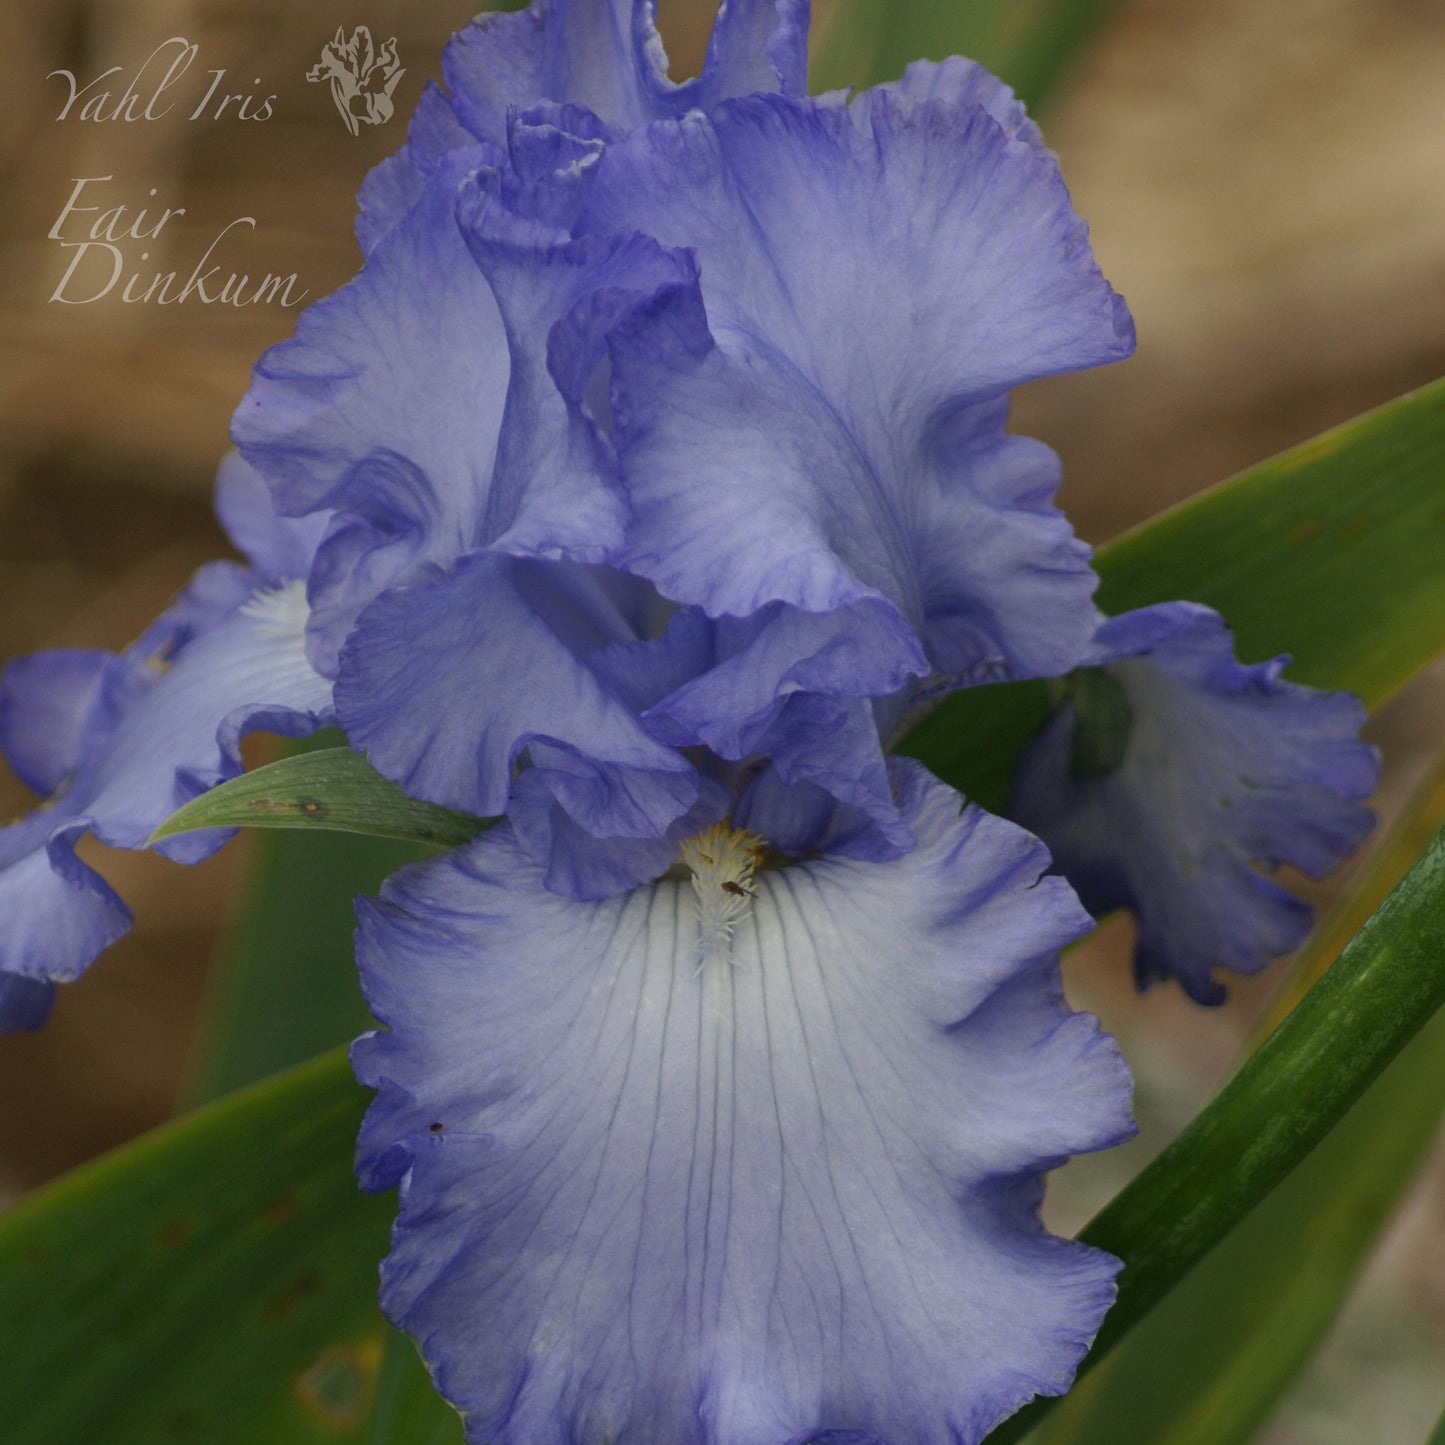 Fair Dinkum - Tall bearded iris